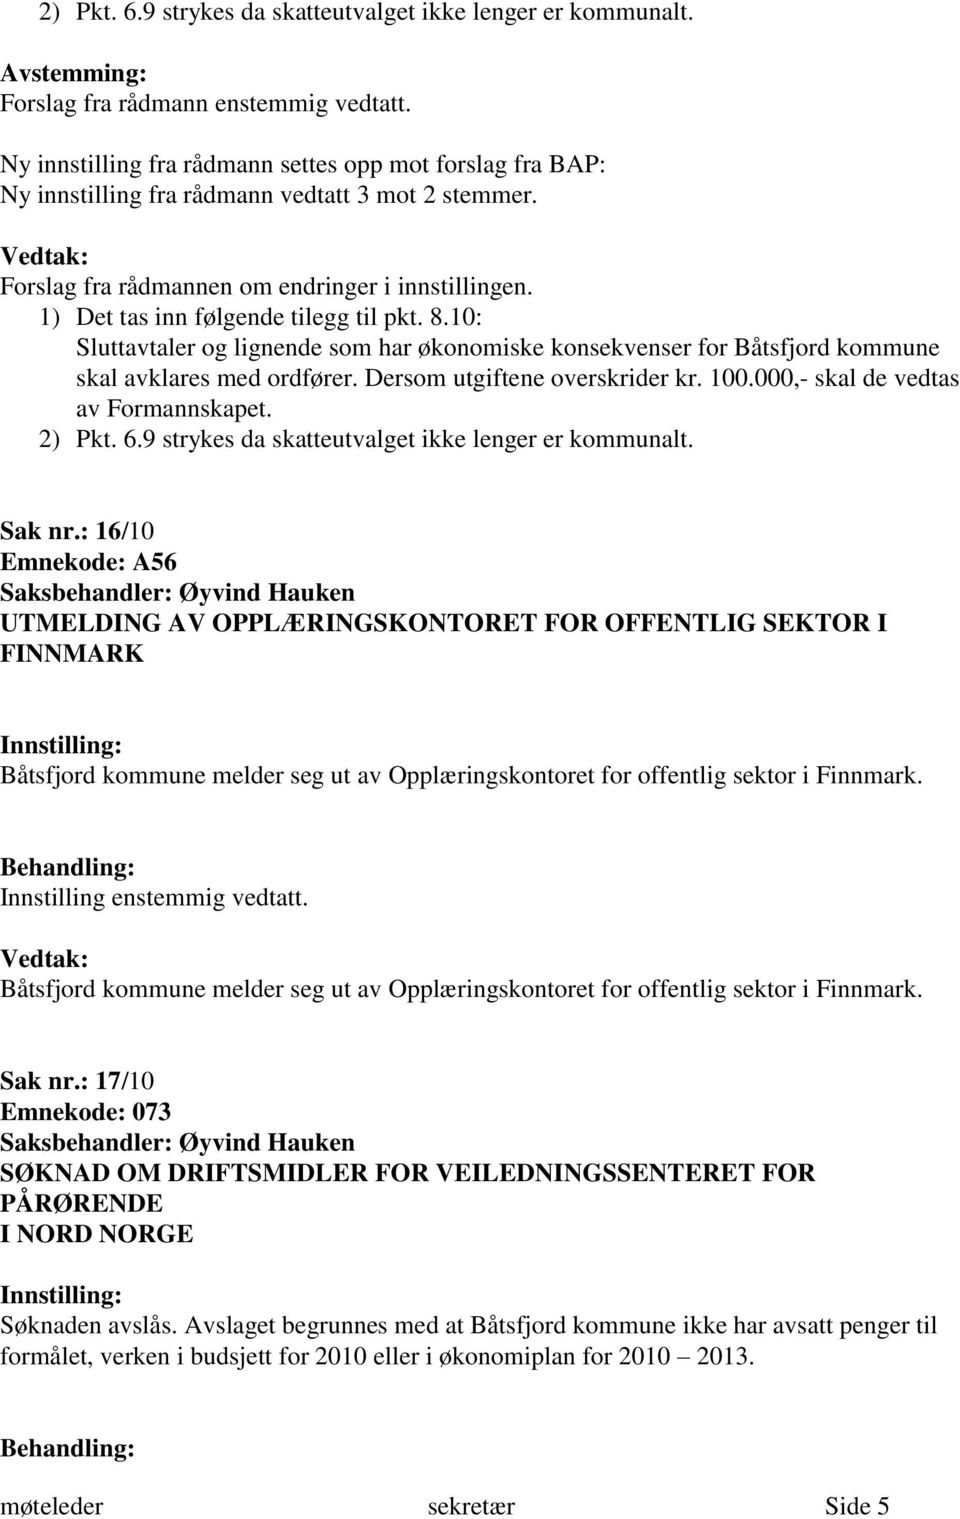 1) Det tas inn følgende tilegg til pkt. 8.10: Sluttavtaler og lignende som har økonomiske konsekvenser for Båtsfjord kommune skal avklares med ordfører. Dersom utgiftene overskrider kr. 100.